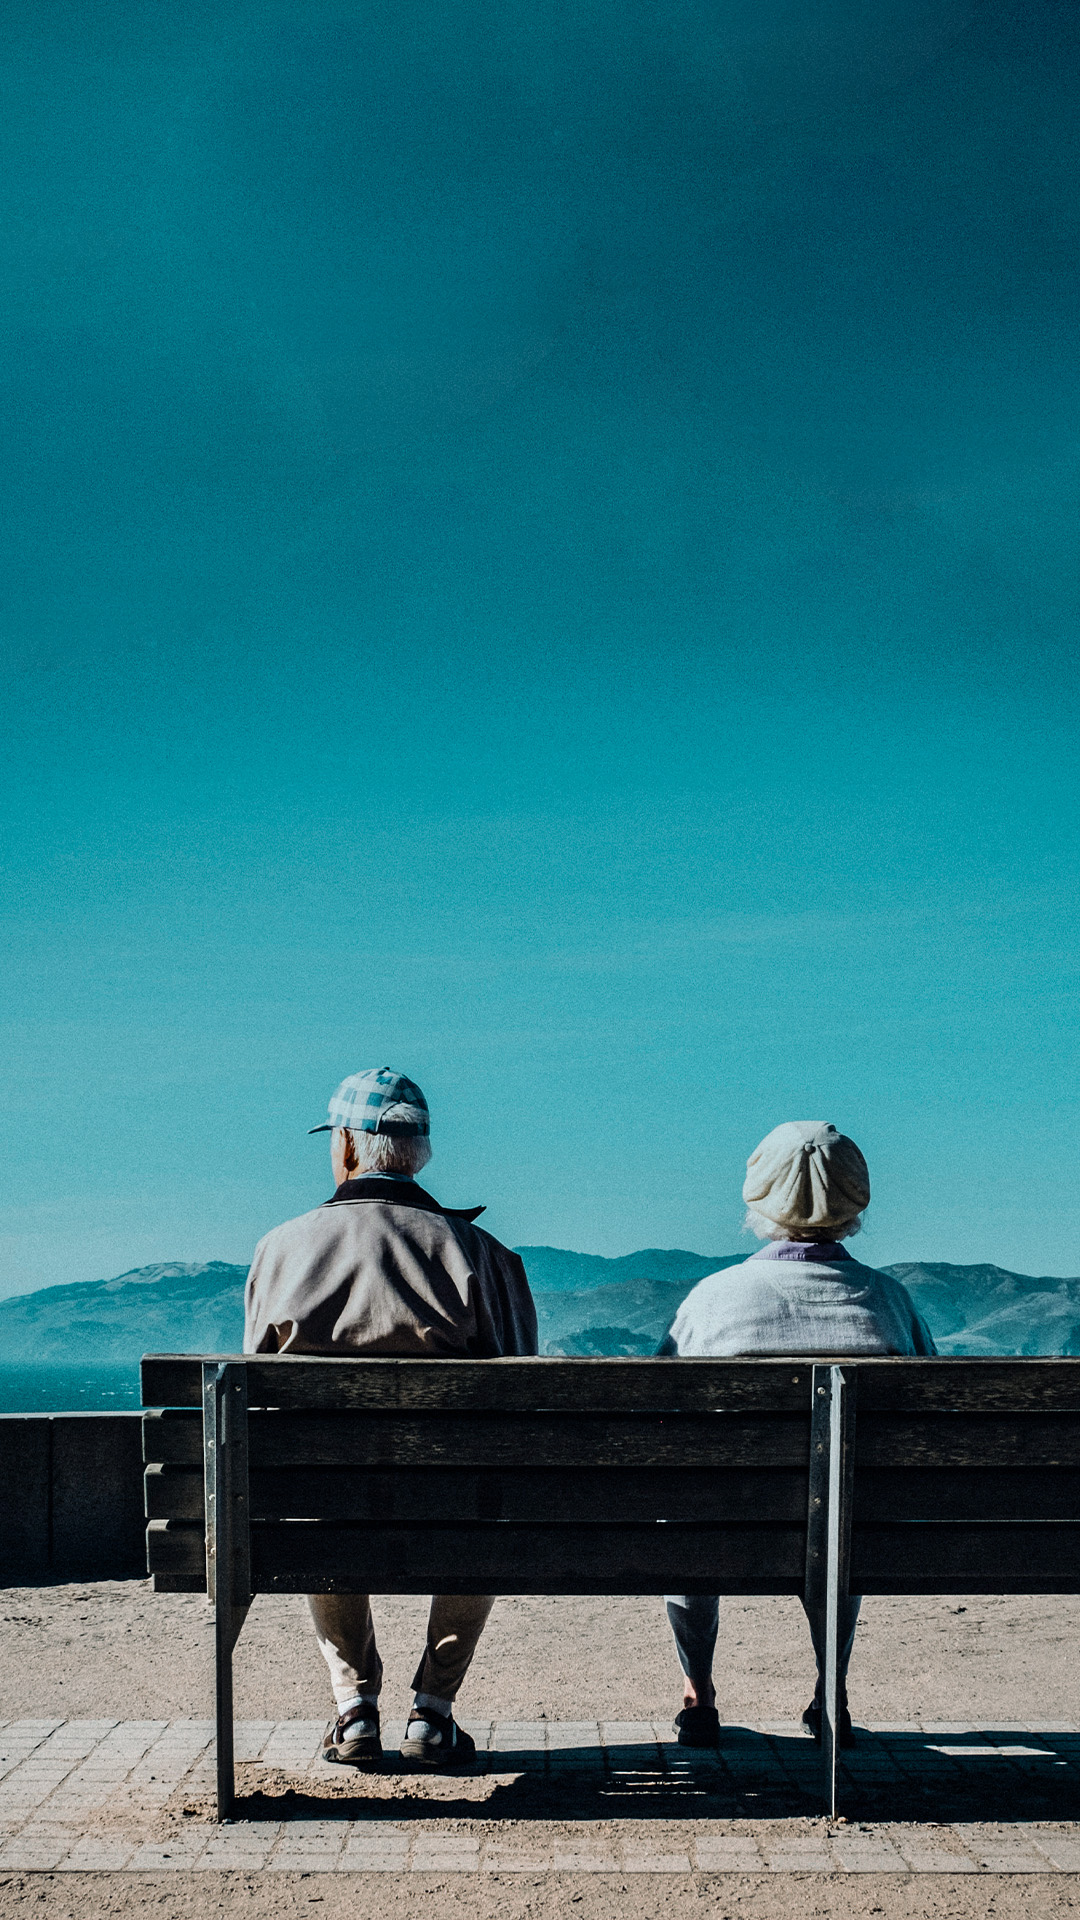 Maintien de l'autonomie des personnes âgées à domicile et prévention de la dépendance